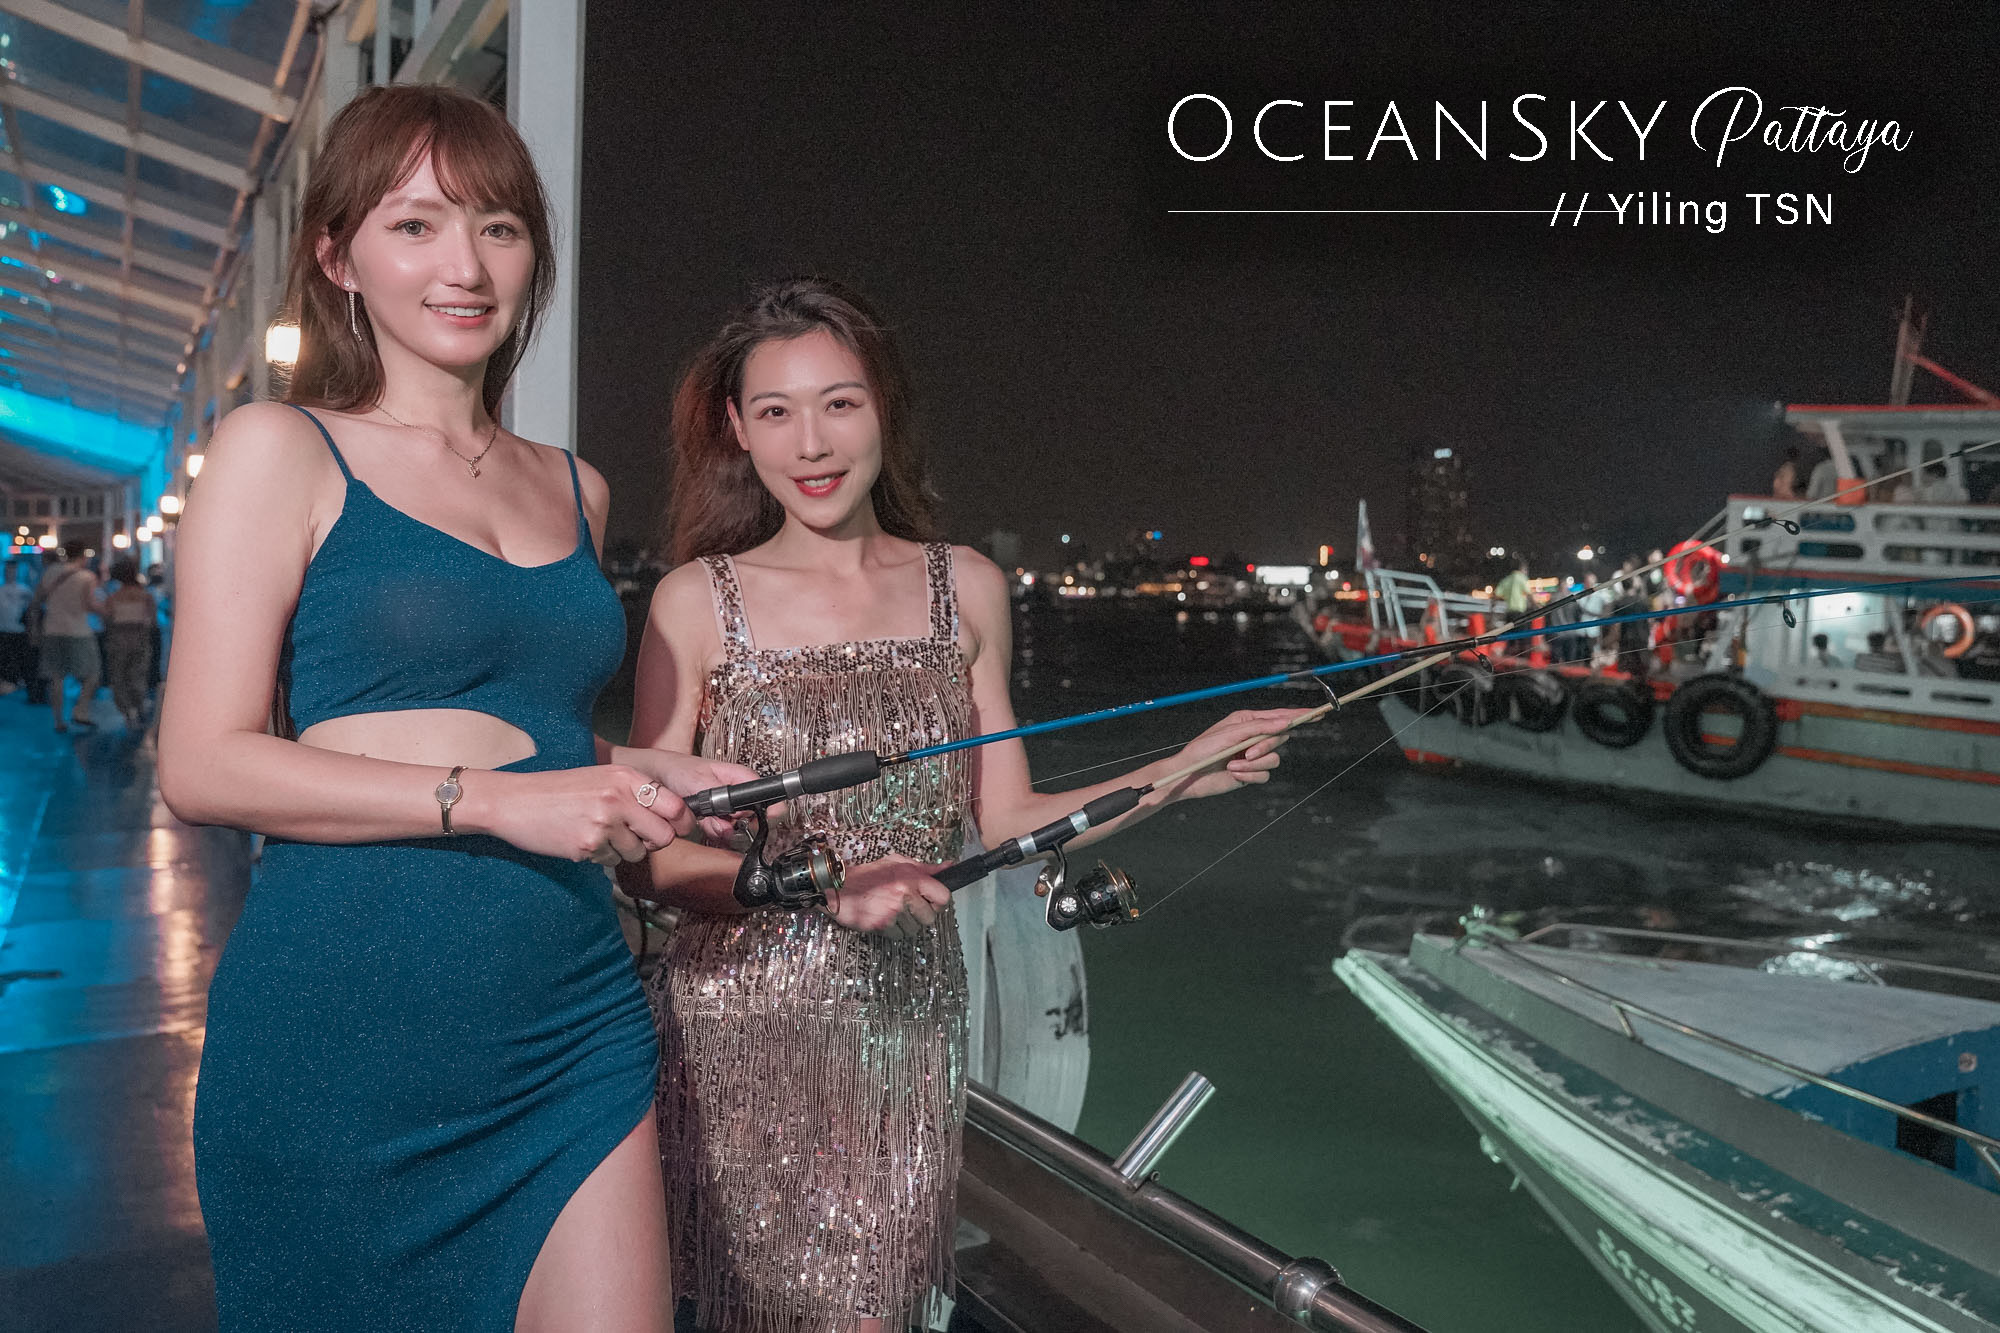 Ocean Sky Pattaya 芭達雅海洋天空郵輪晚宴：澎湃自助餐、優質人妖表演、芭達雅唯一帥氣猛男秀